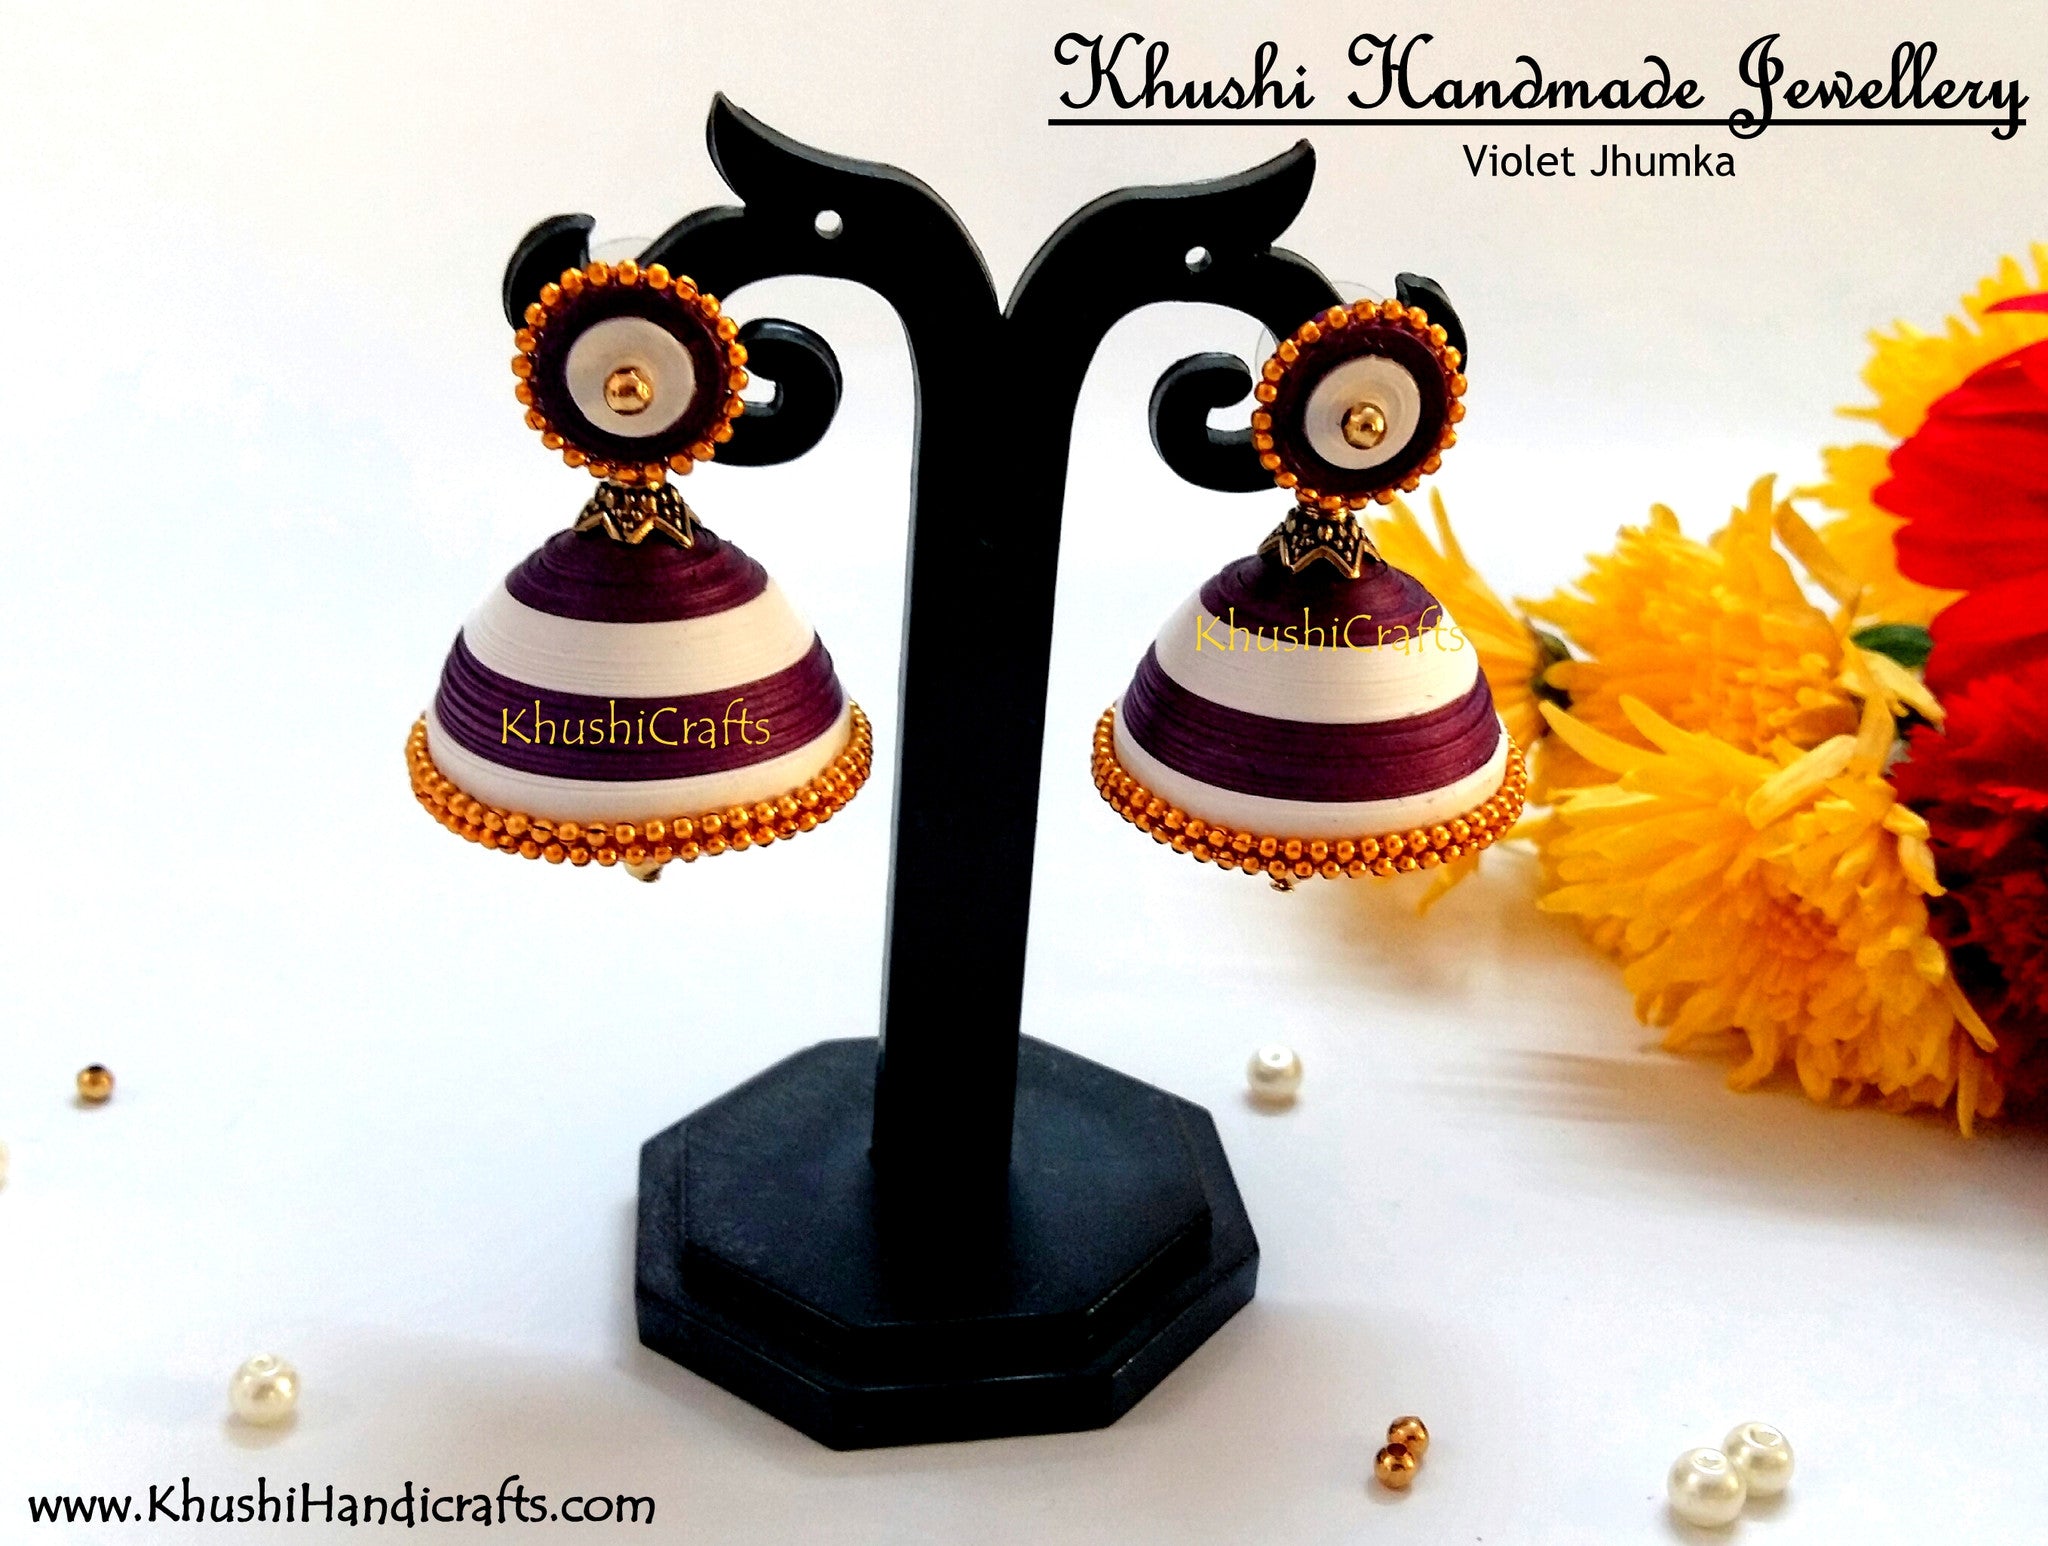 Buy Violet Jhumka Online! – Khushi Handicrafts